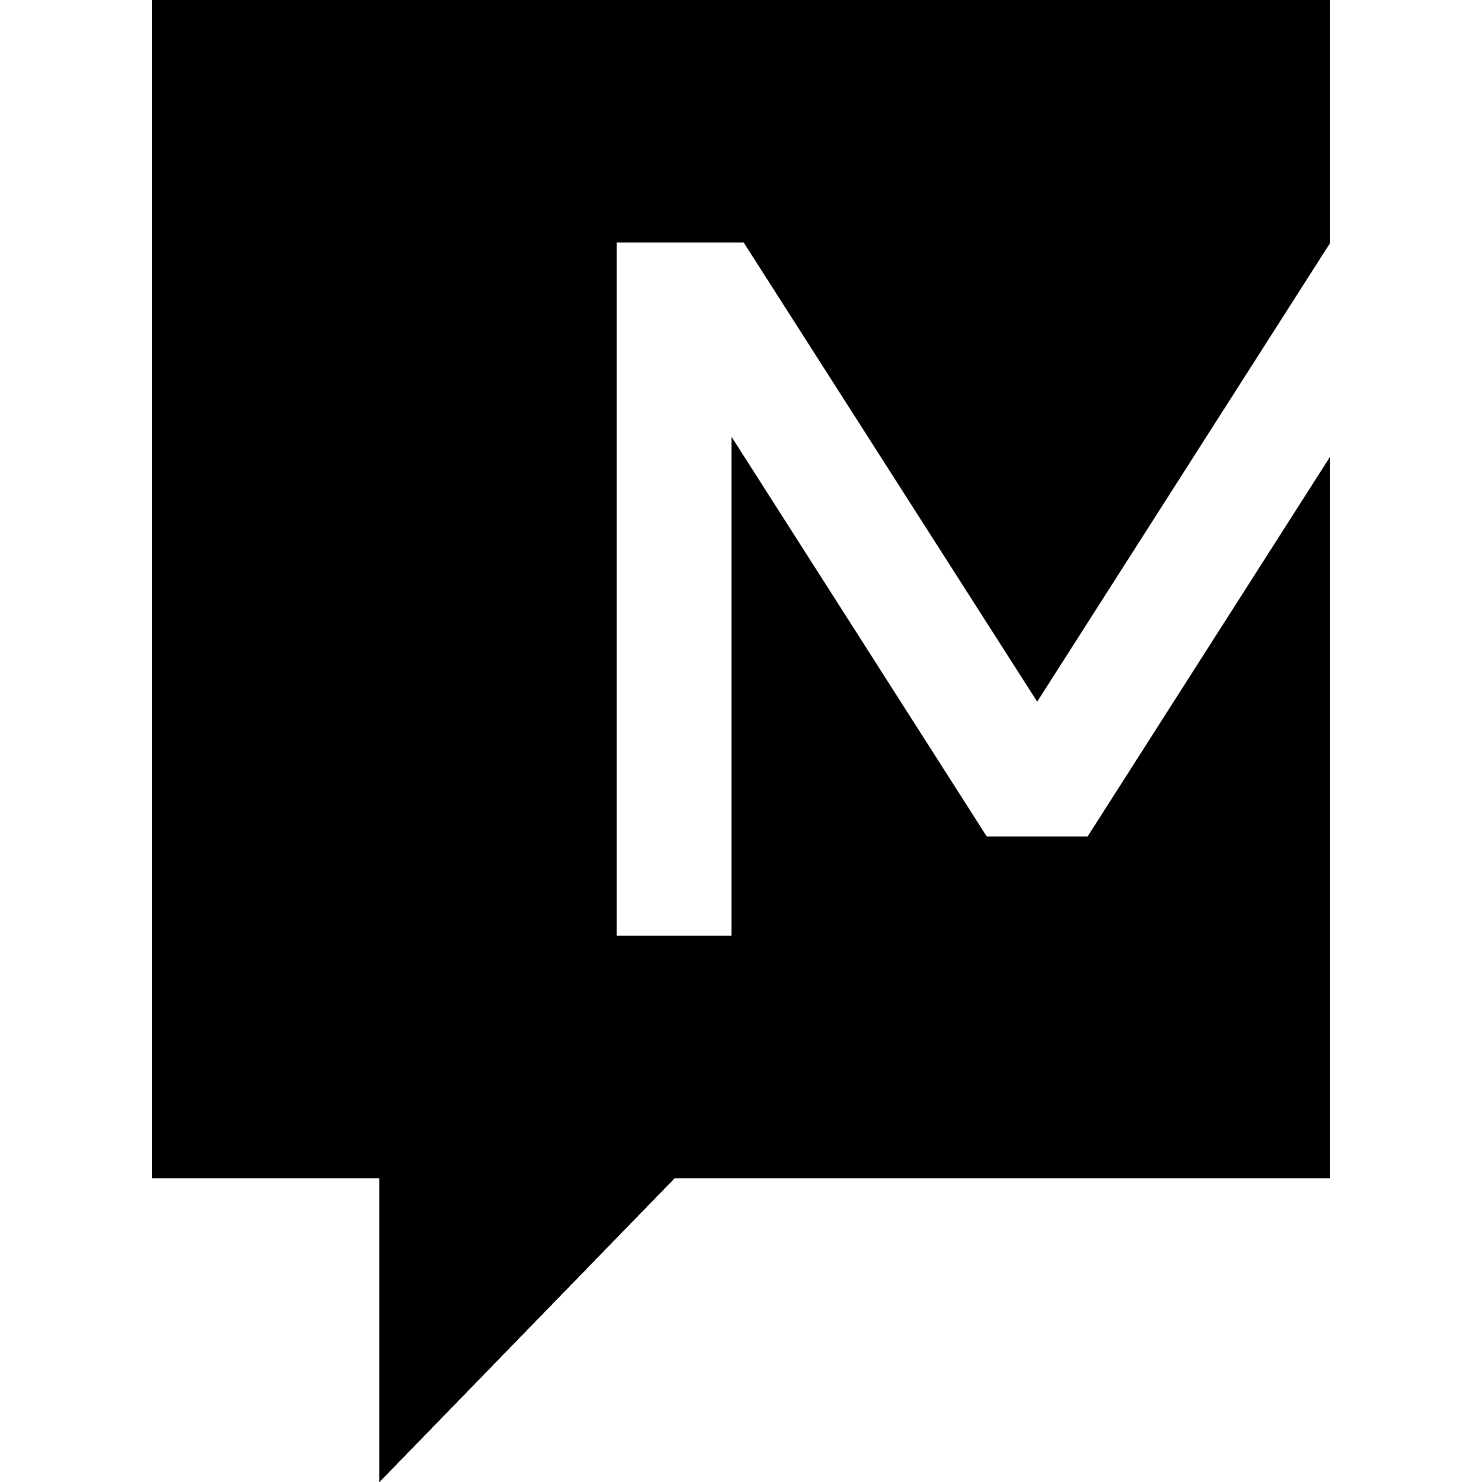 Modere Logo - Modere Social Marketers Of Colorado Ranch, CO 903 4569